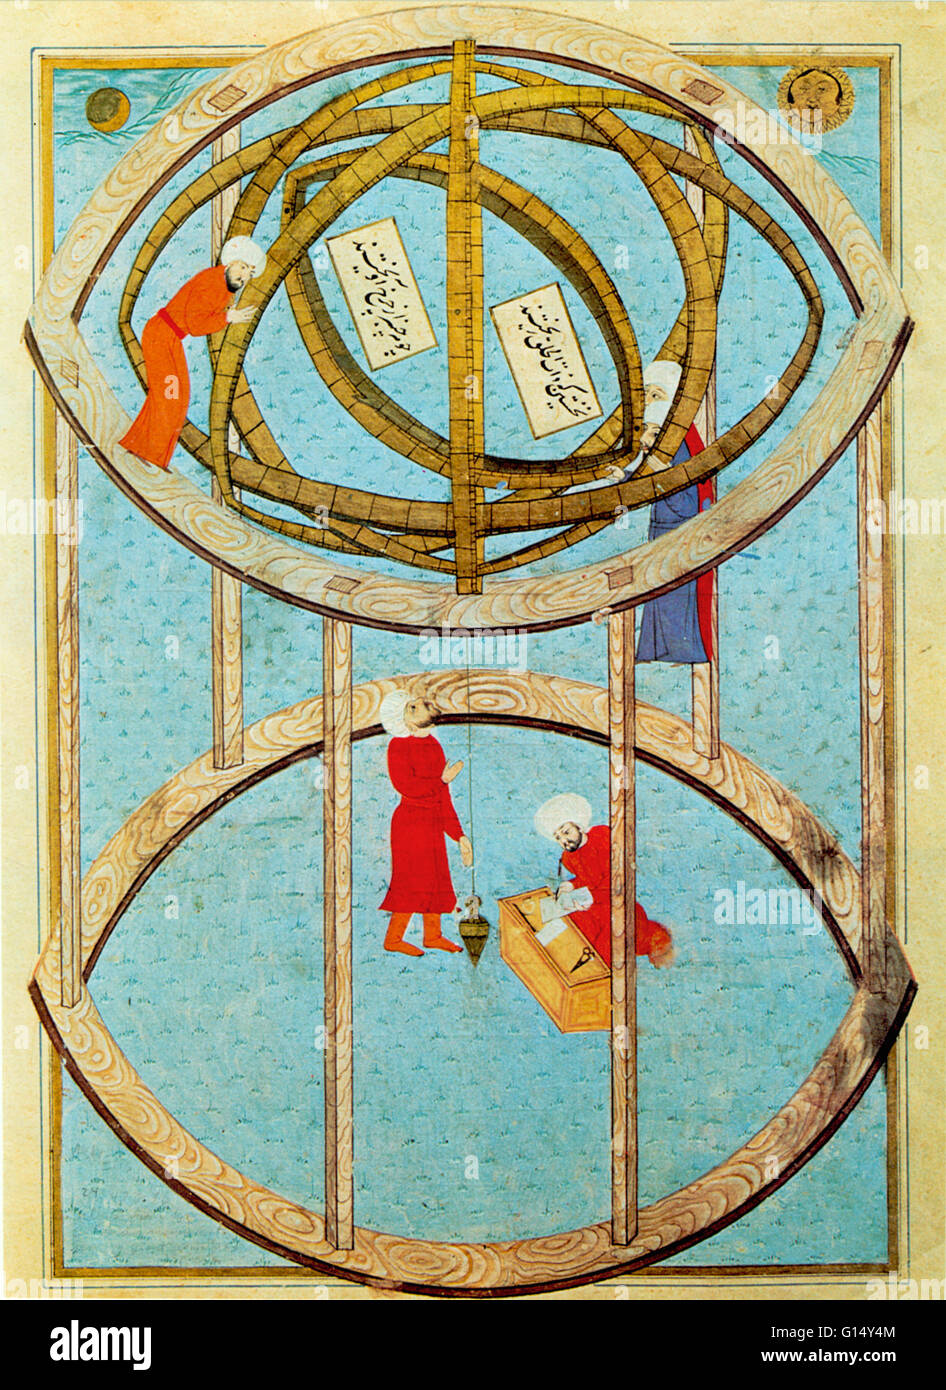 Illustration aus 16. Jahrhundert osmanischen Manuskript zeigt eine riesige Armillarsphäre (auch bekannt als kugelförmige Astrolabium, Armilla oder Armil) ist ein Modell der Himmelskugel. Stockfoto